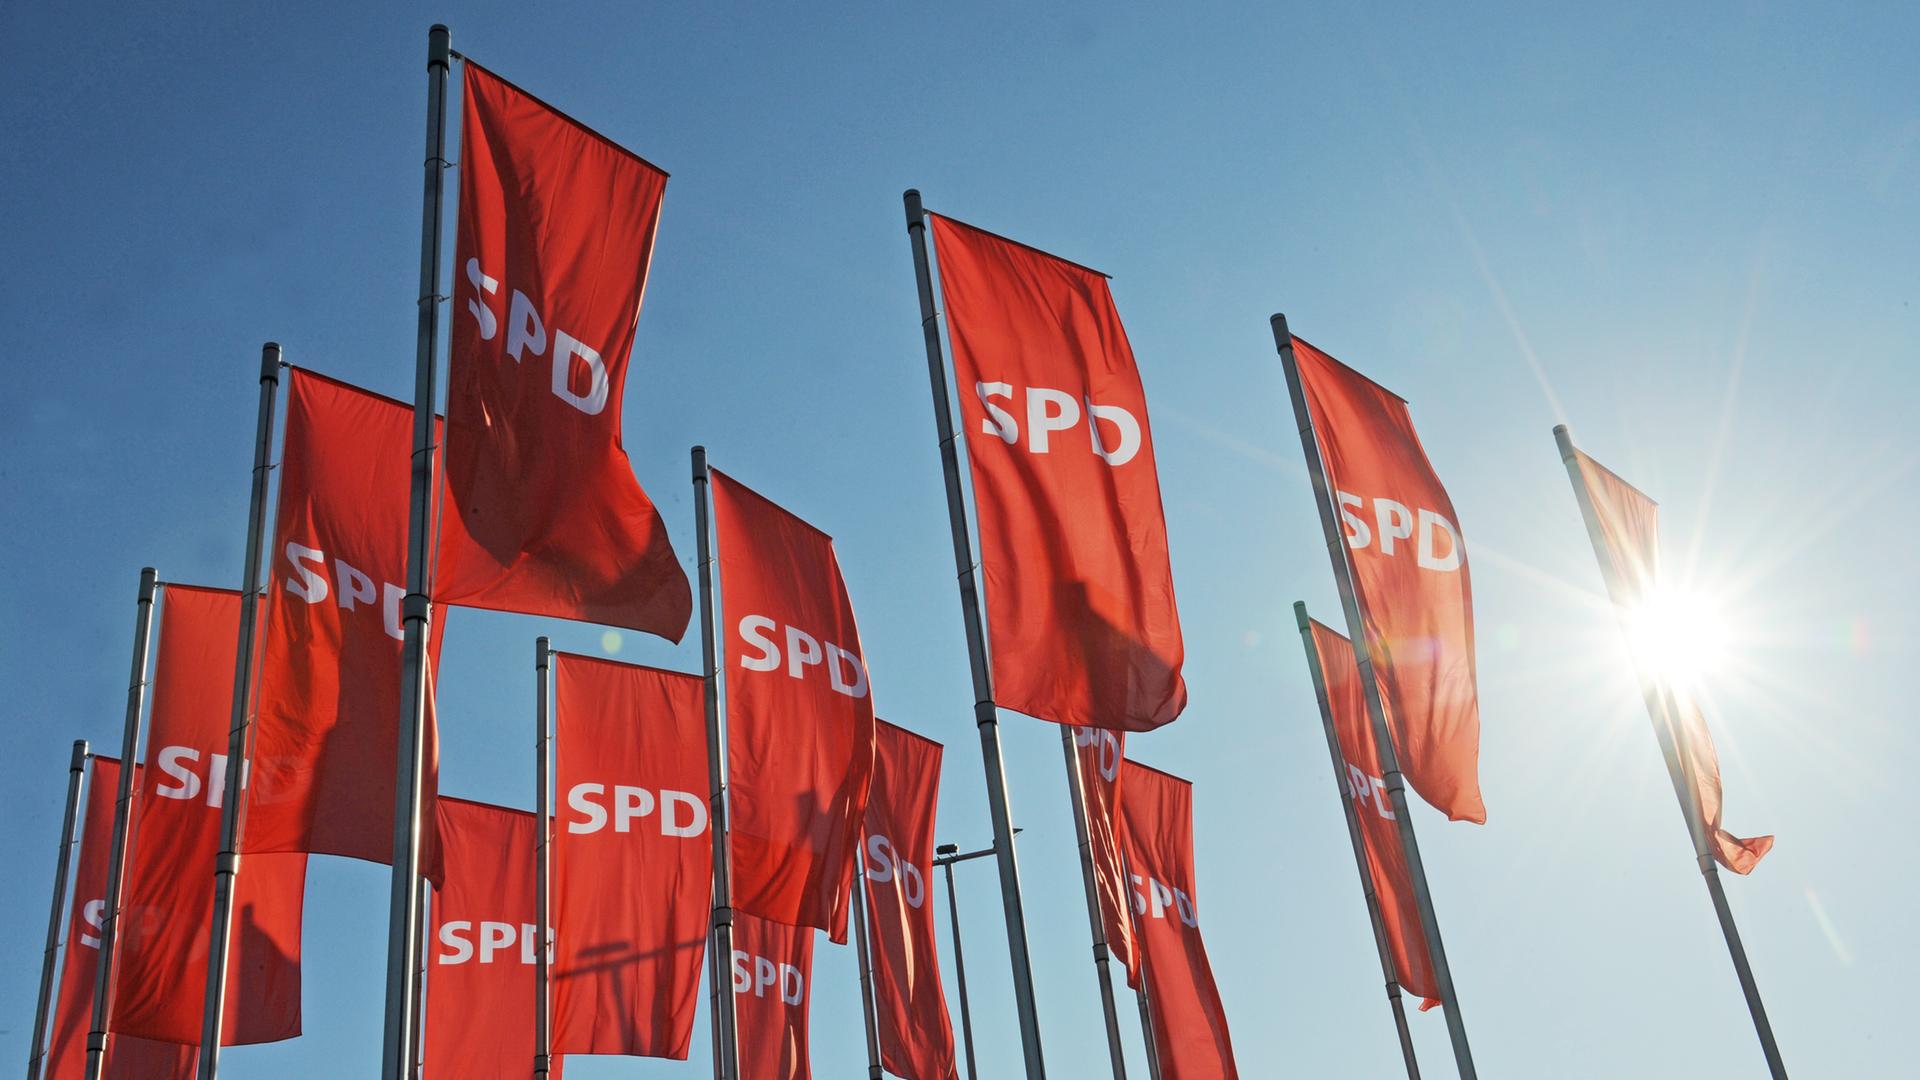 Mehrere rote Fahnen mit dem SPD-Logo.